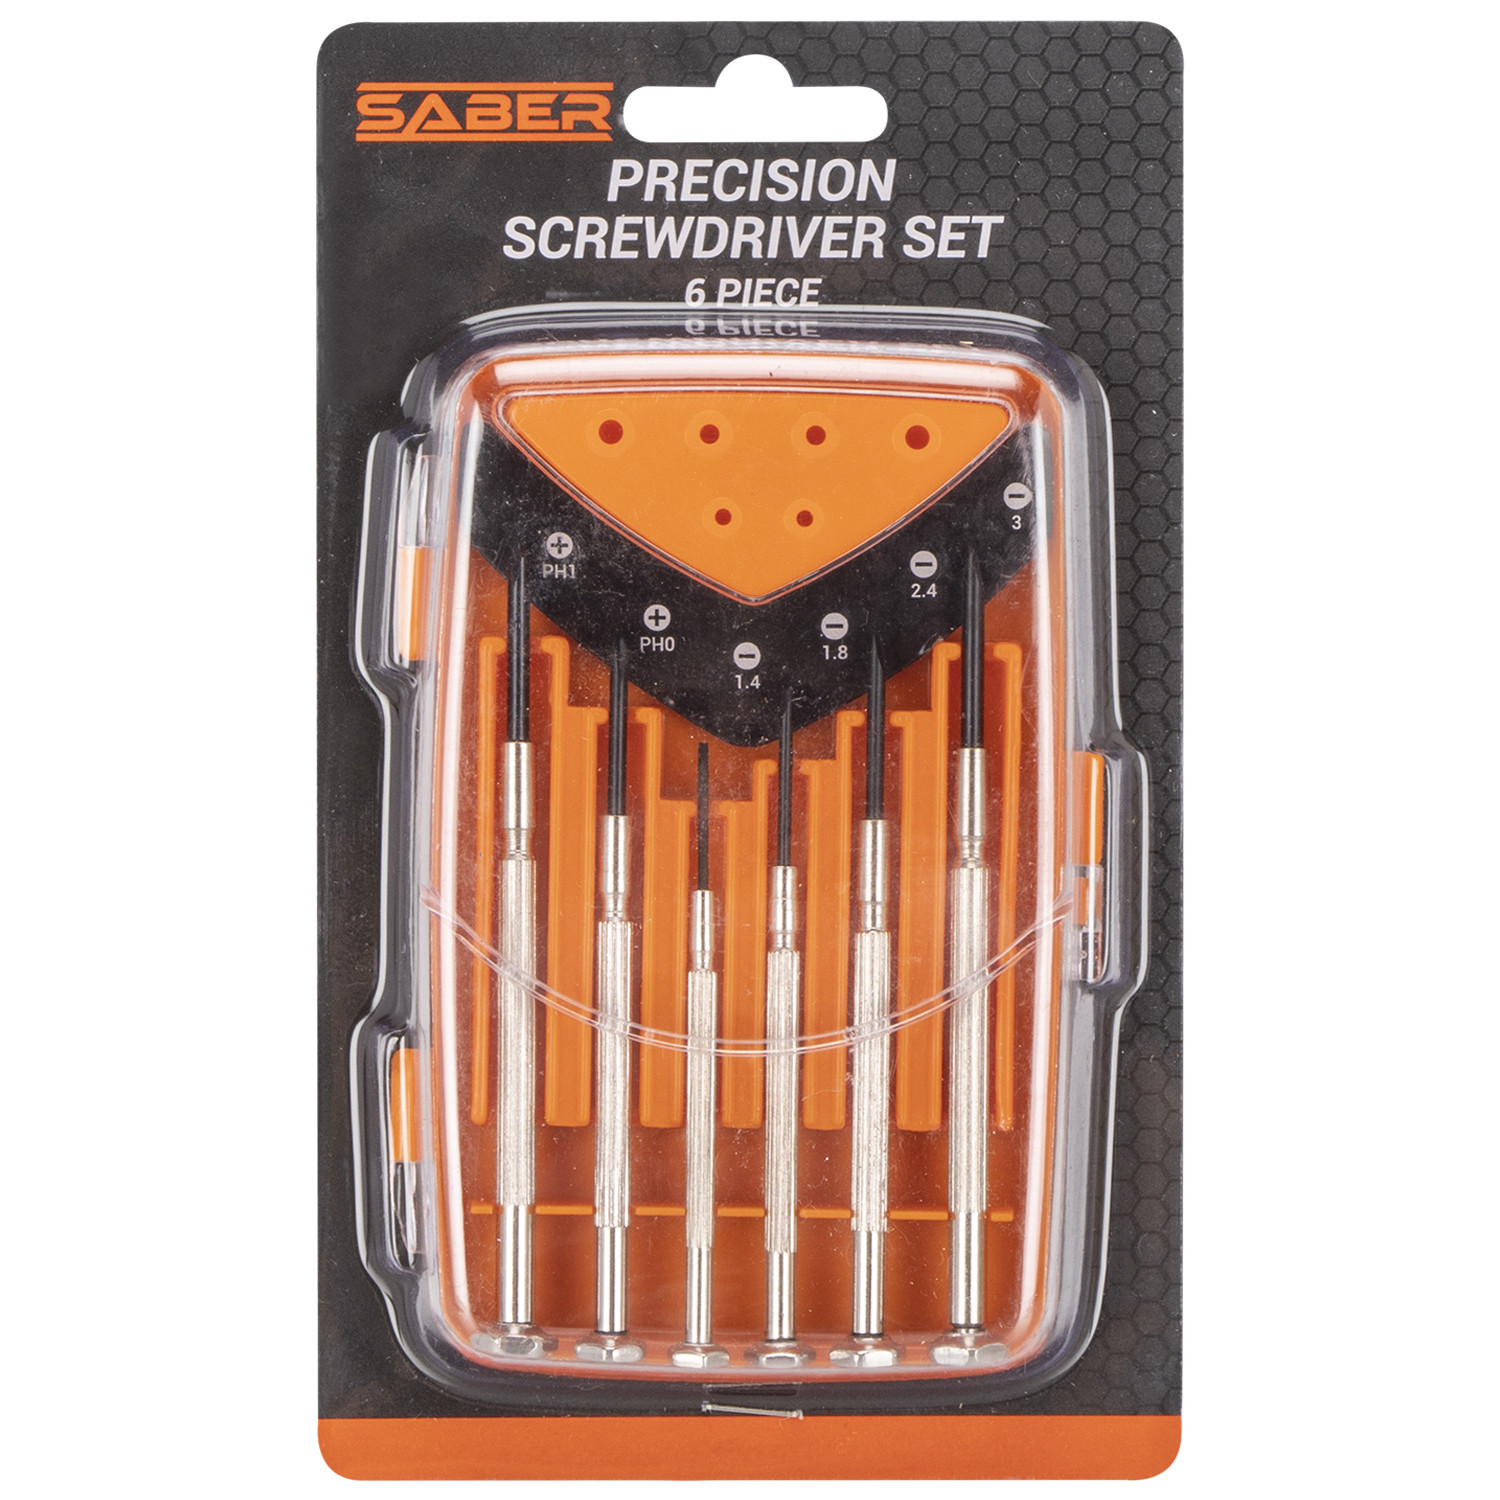 Saber 6 Piece Precision Screwdriver Set Image